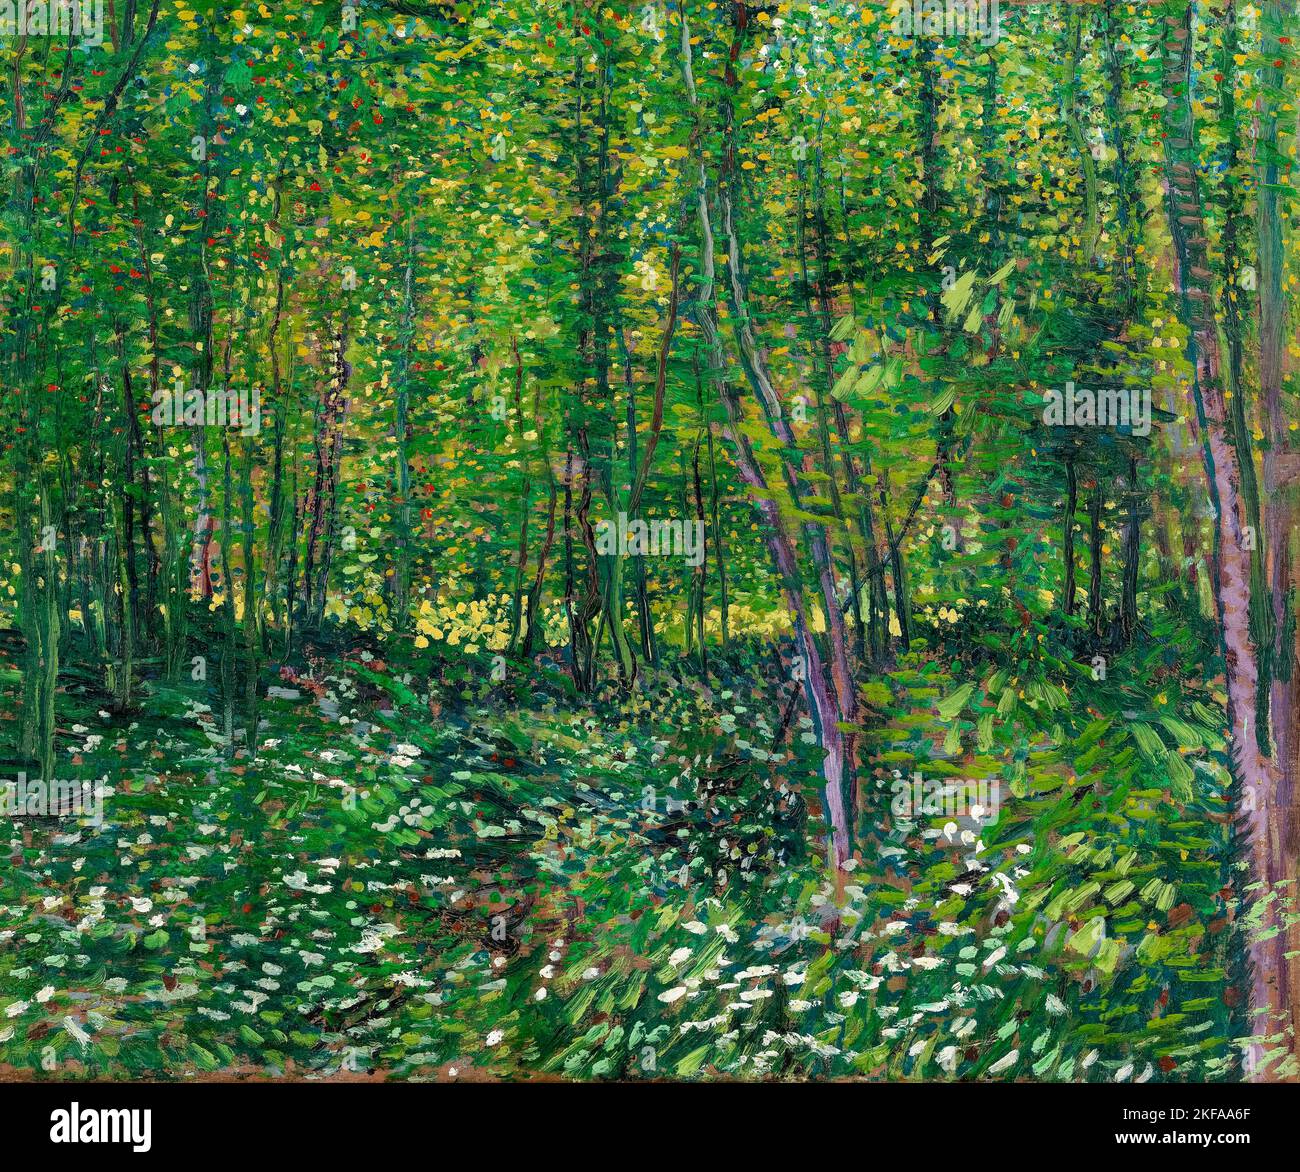 Vincent van Gogh, arbres et sous-bois, peinture à l'huile sur toile, 1887 Banque D'Images